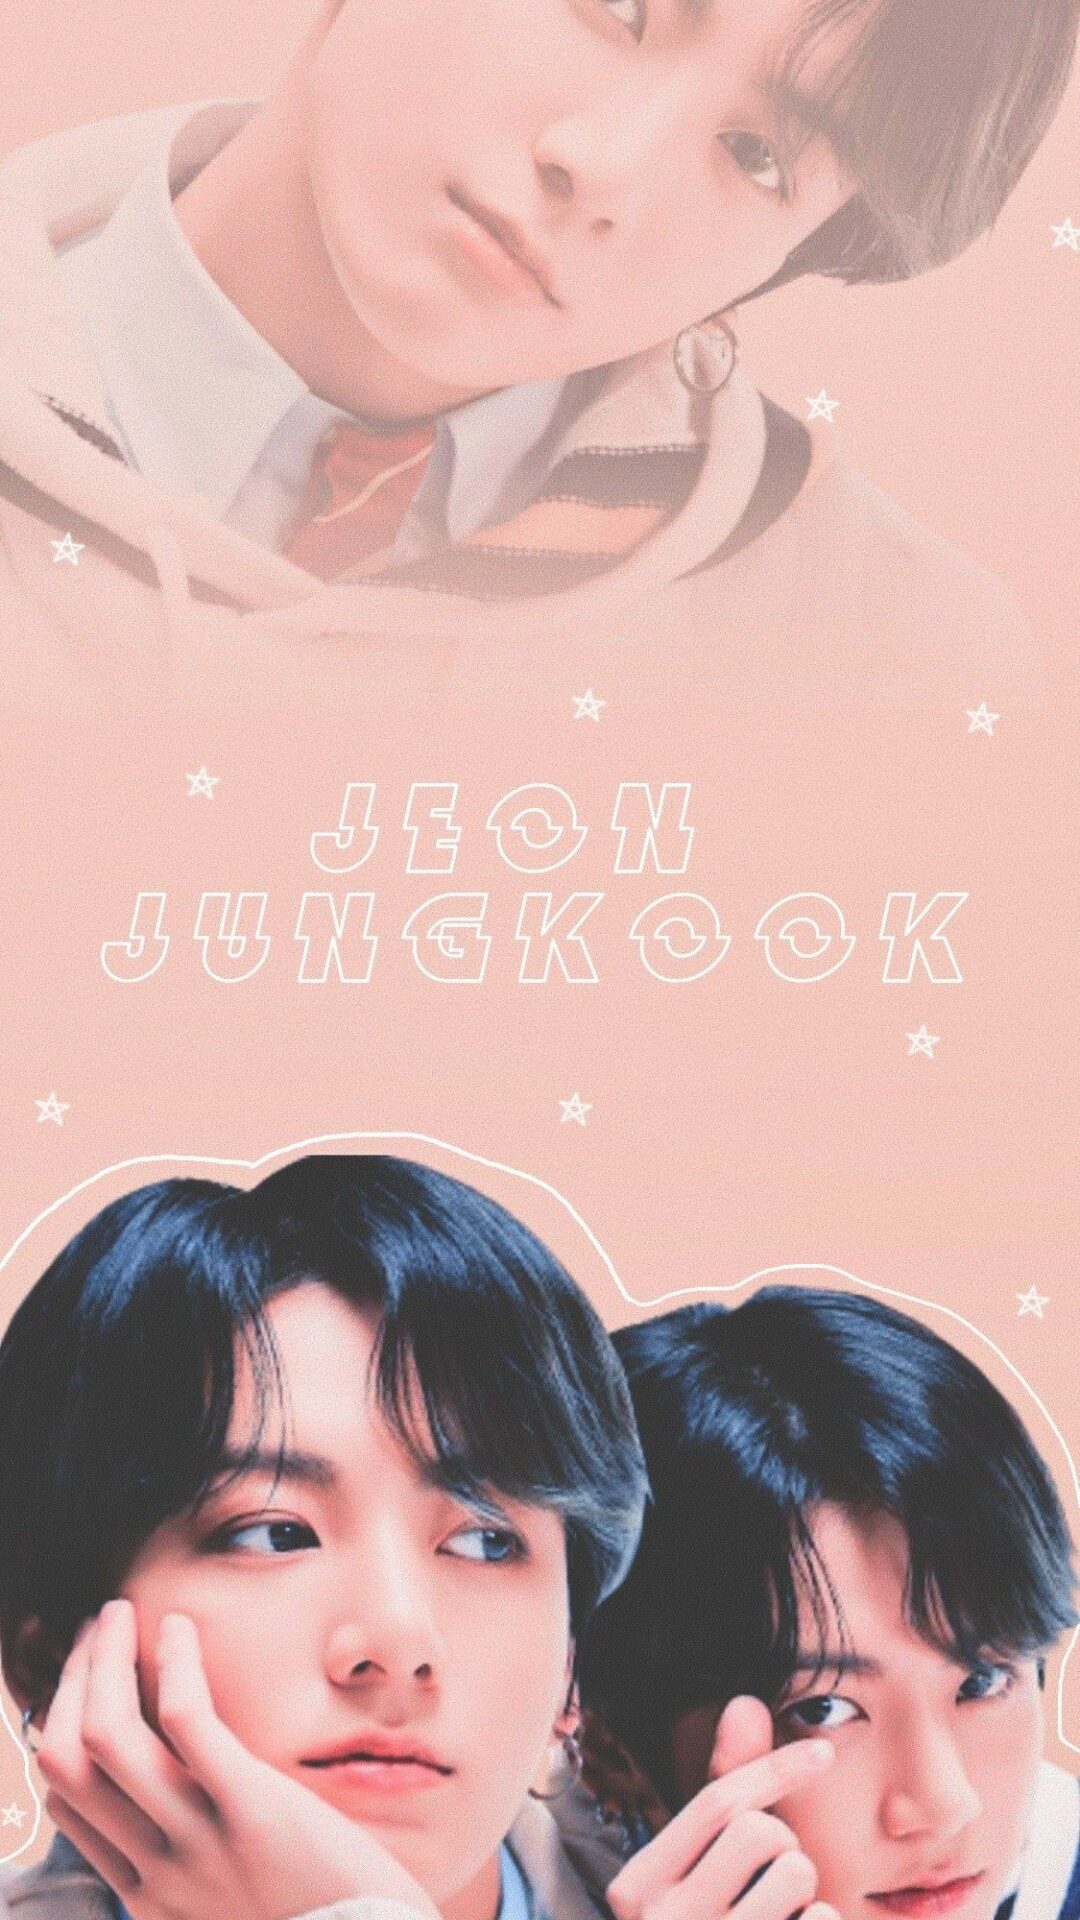 Jungkook Wallpaper HD